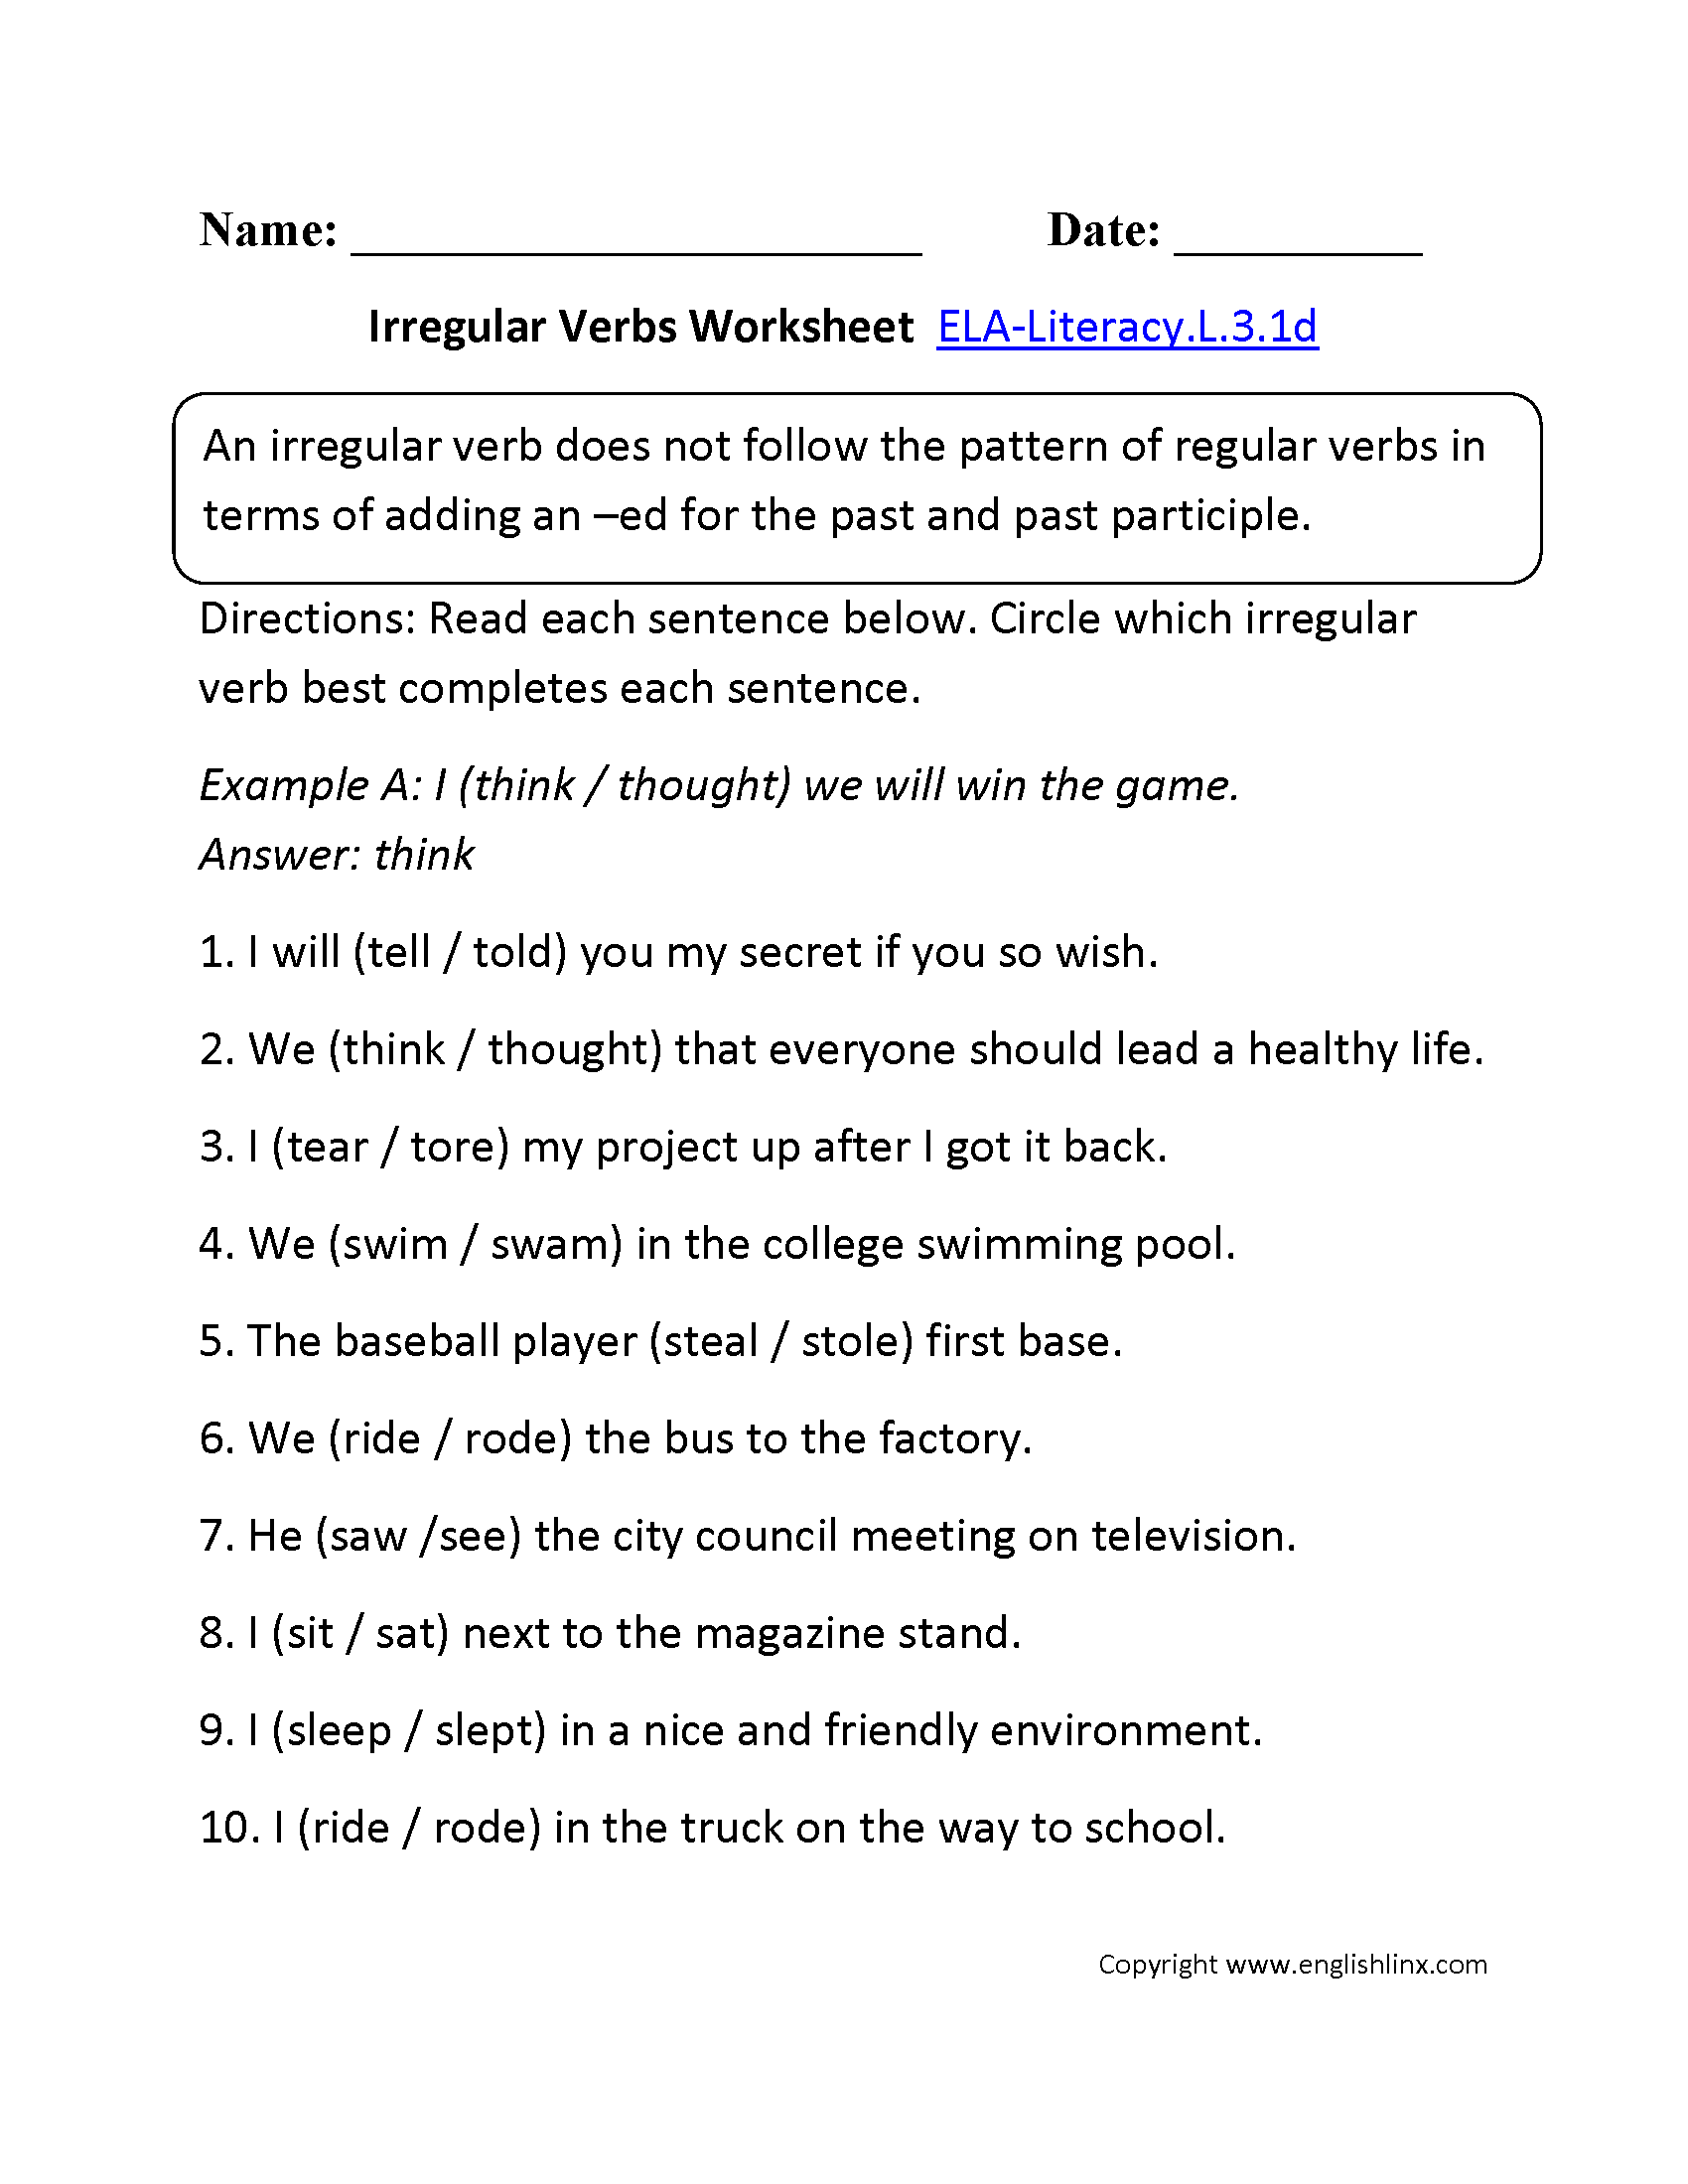 Irregular Verbs Worksheet 1 ELA-Literacy.L.3.1d Language Worksheet